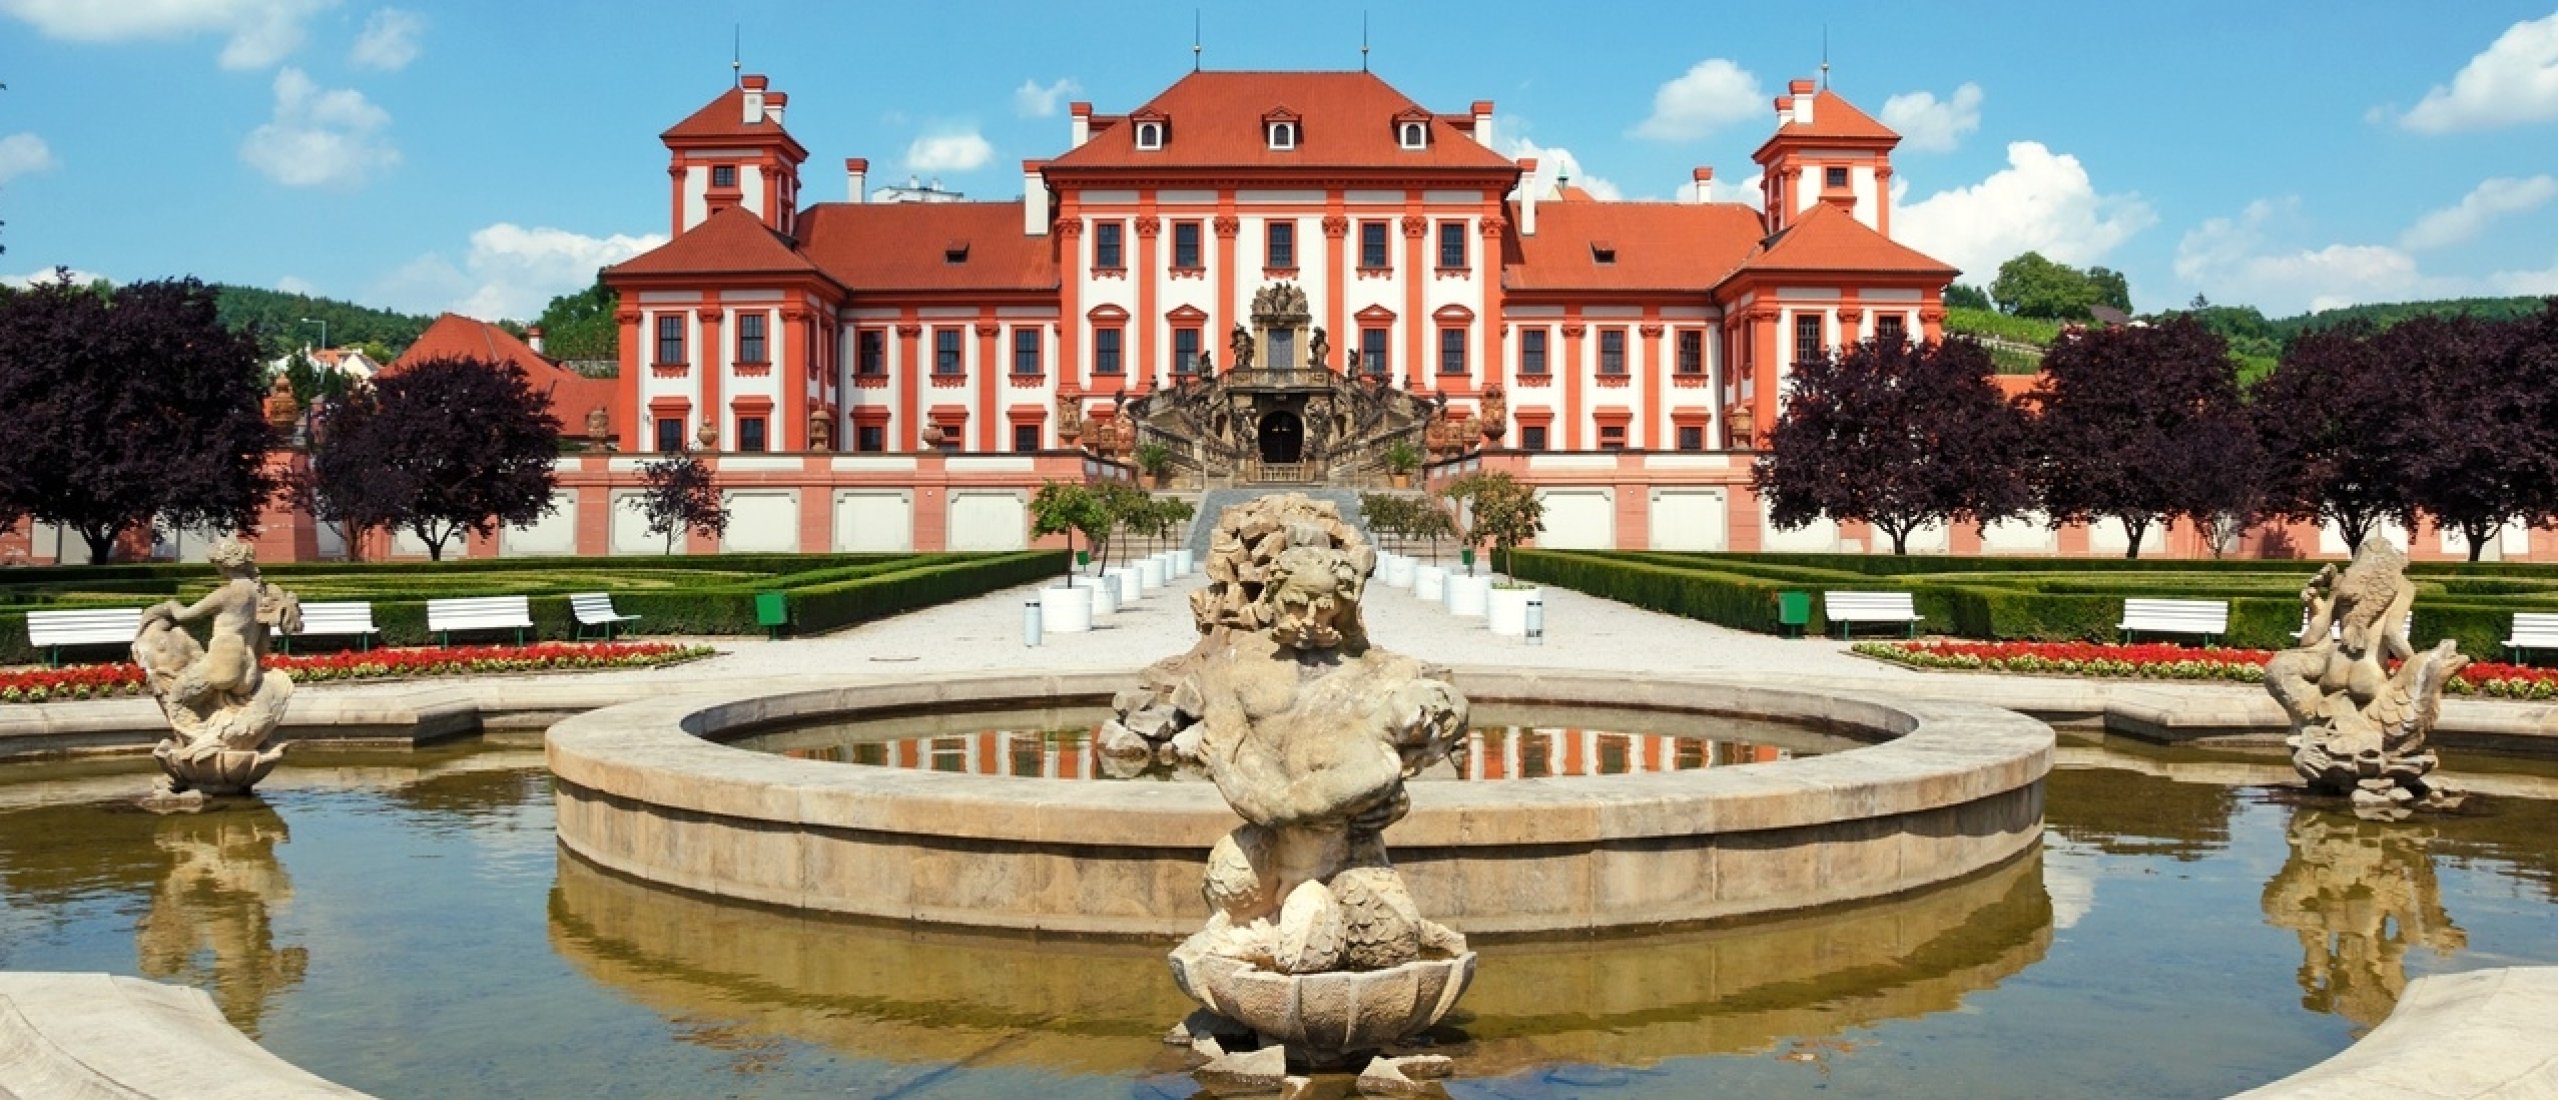 Tschechische Republik | Das Land der Burgen